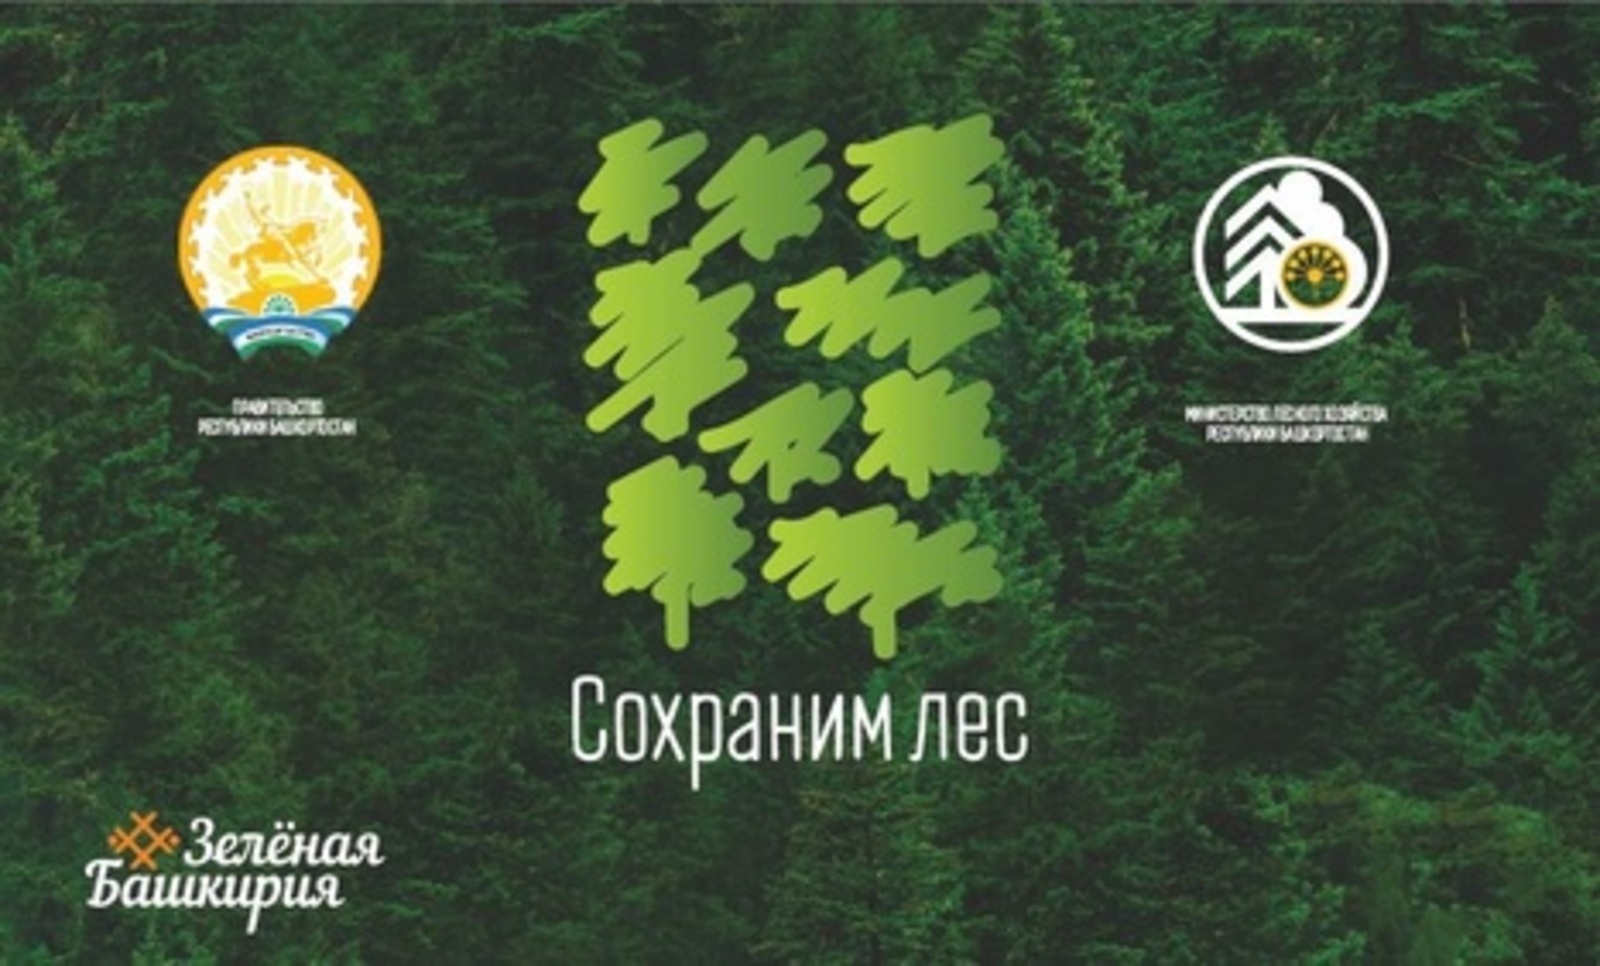 Министр лесного хозяйства Башкортостана Марат Шарафутдинов: в рамках Всероссийской акции «Сохраним лес» башкирские лесоводы высадят 300 тысяч новых деревьев